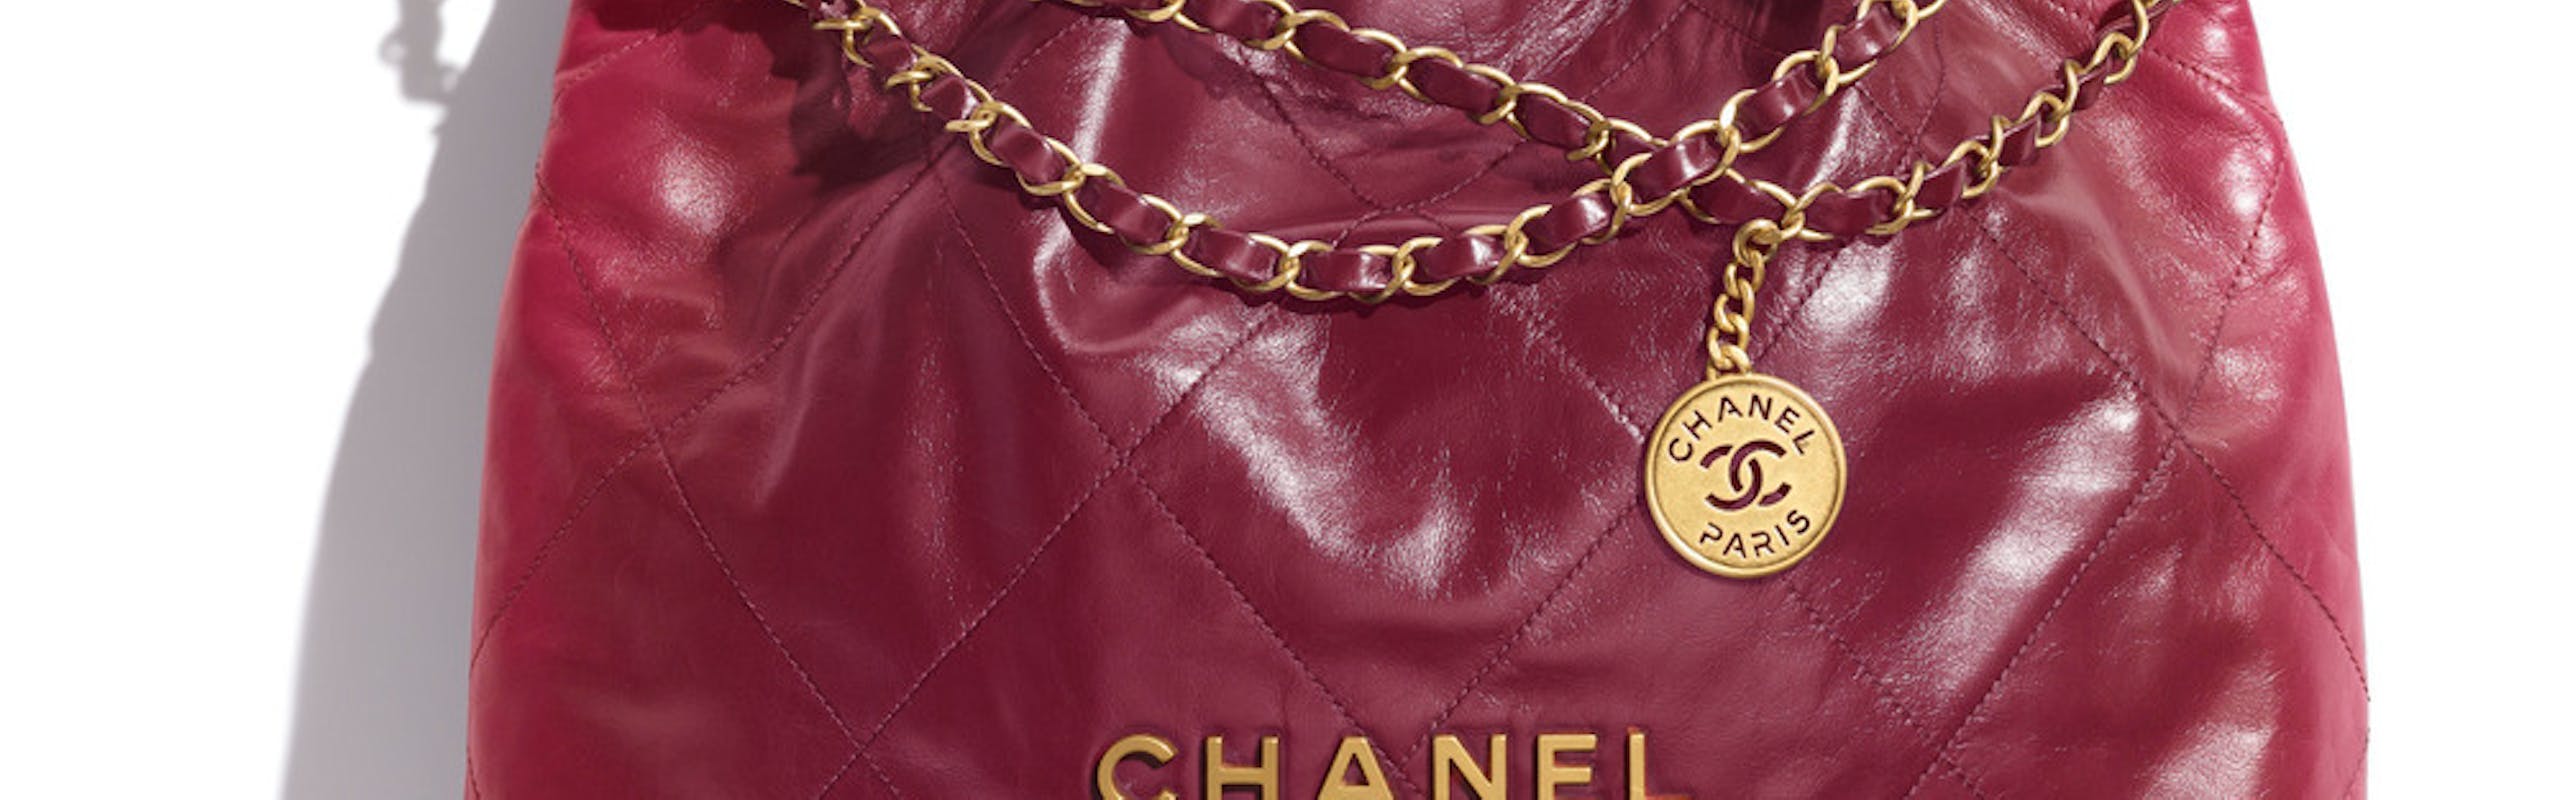 Chanel 22 Tasche in Burgunder